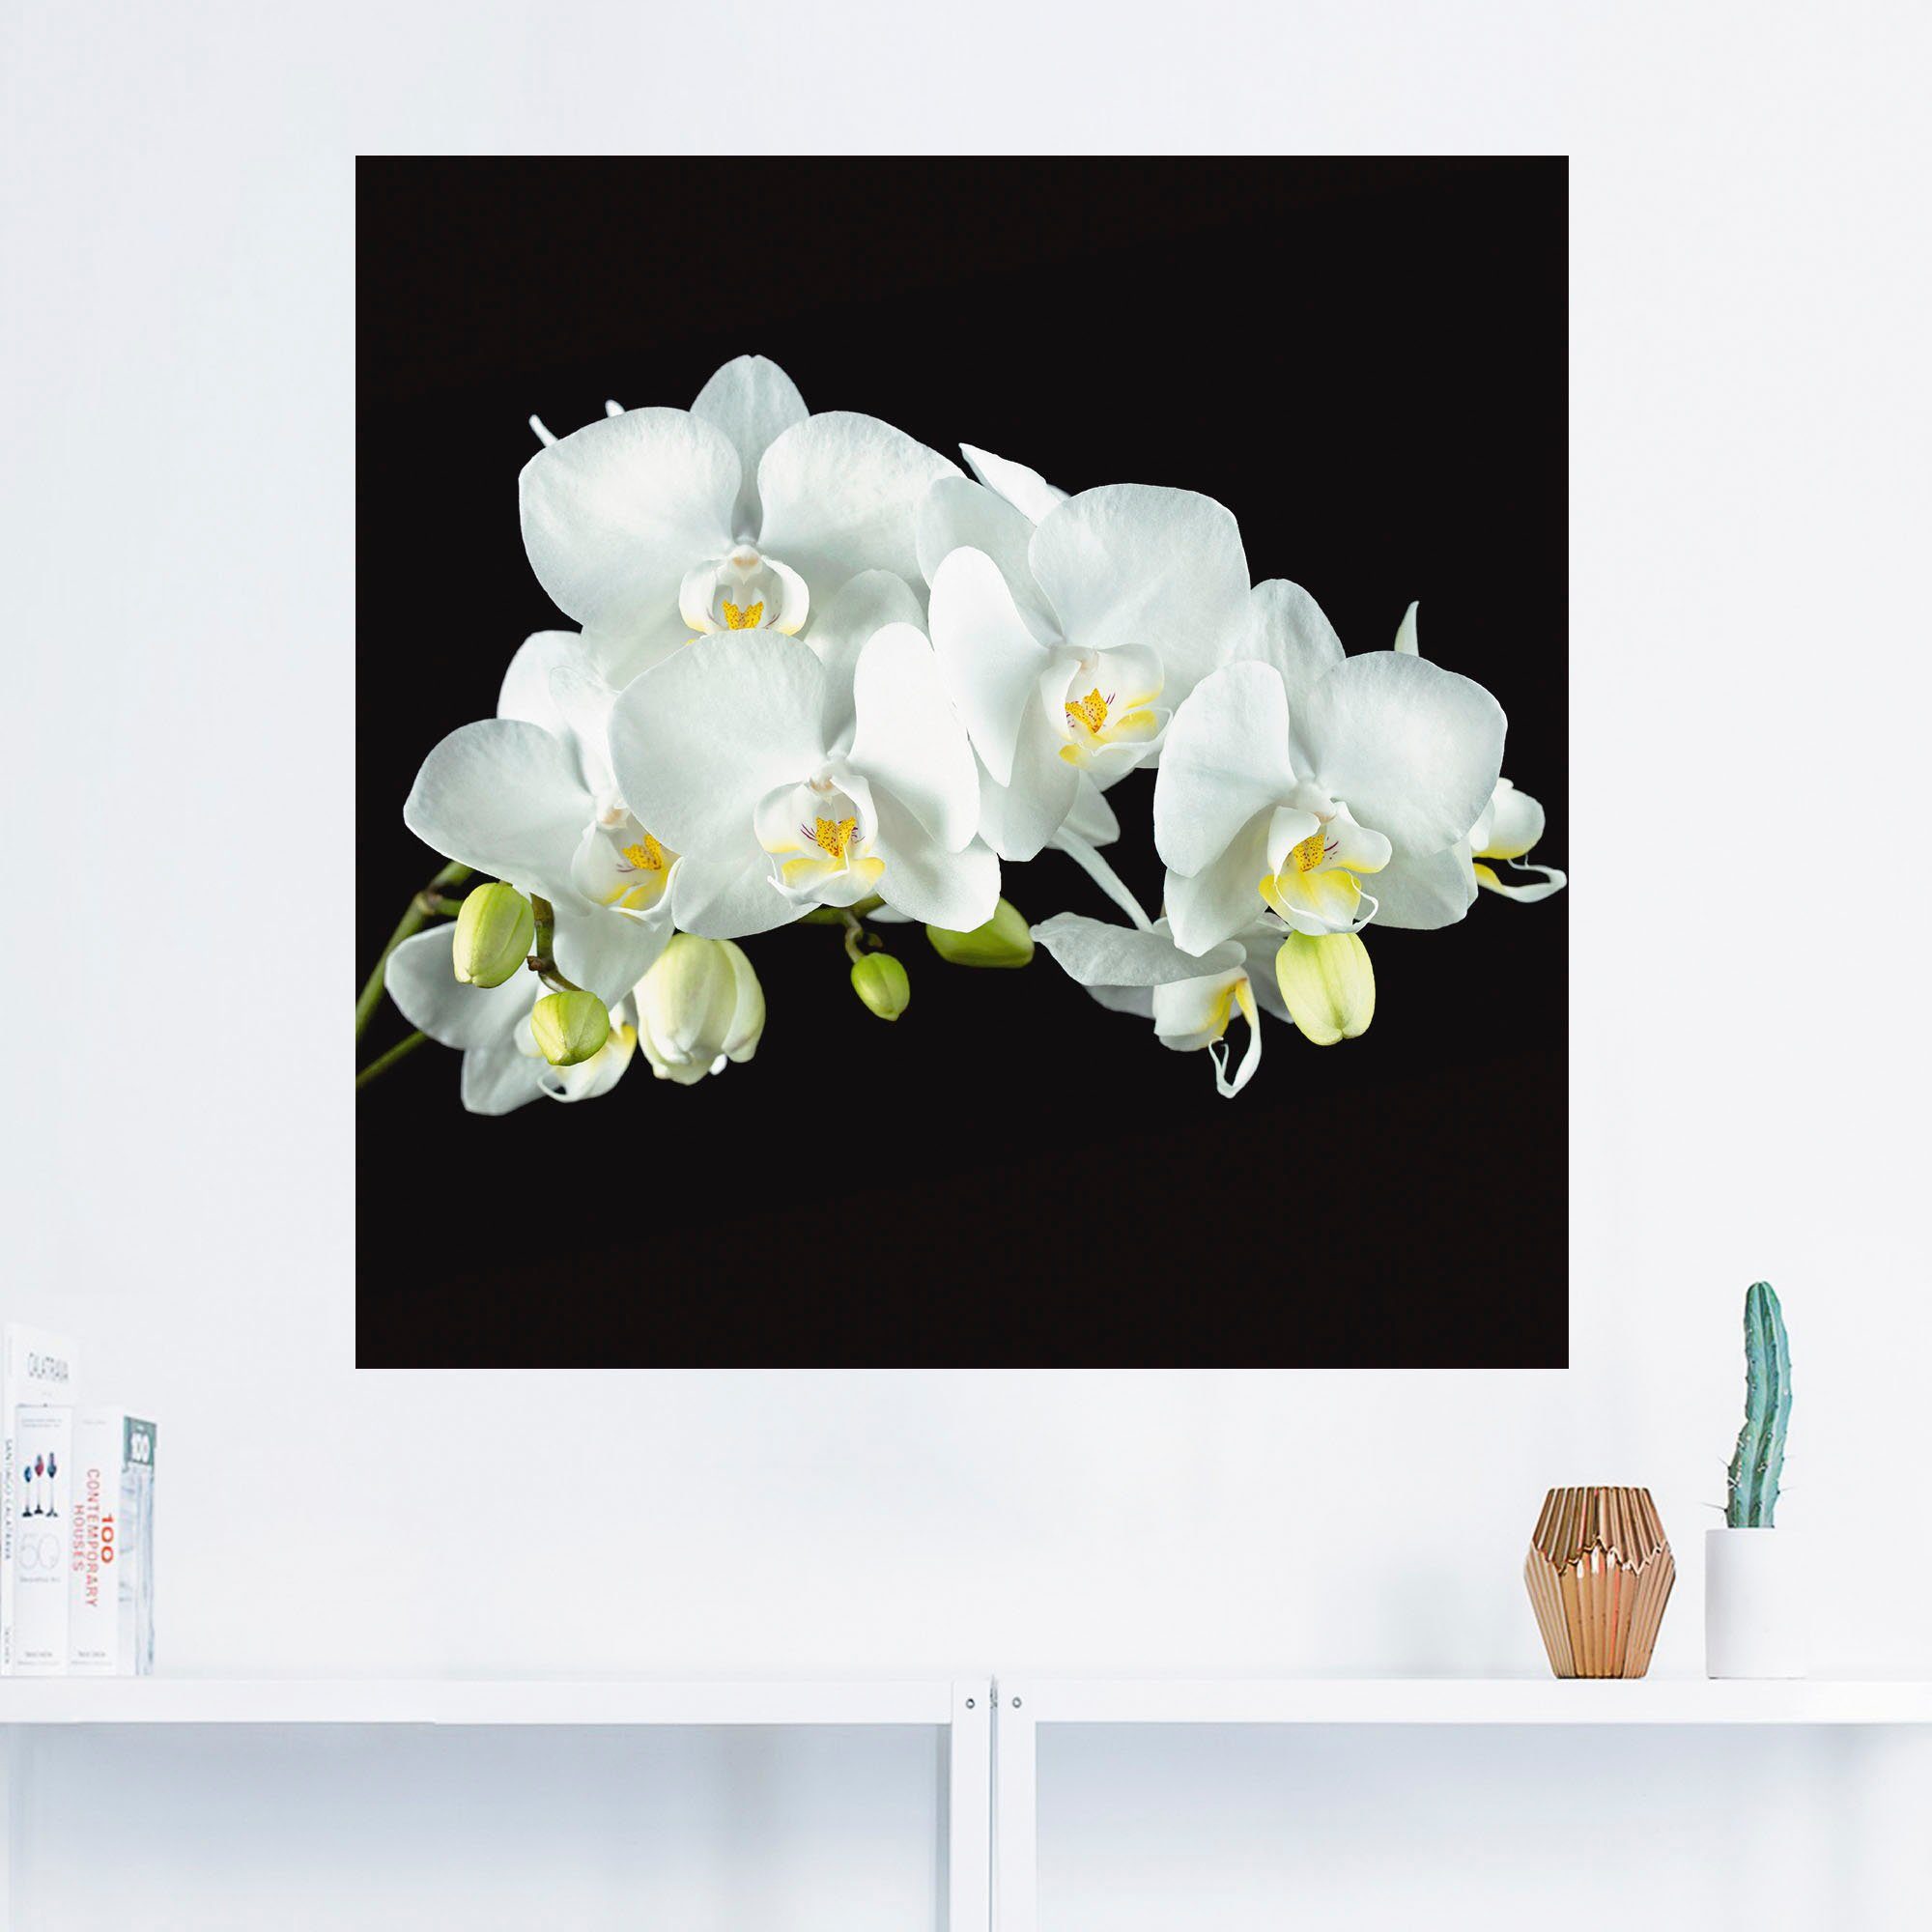 Artland Artprint Witte orchidee op een zwarte achtergrond in vele afmetingen & productsoorten - artprint van aluminium / artprint voor buiten, artprint op linnen, poster, muurstick